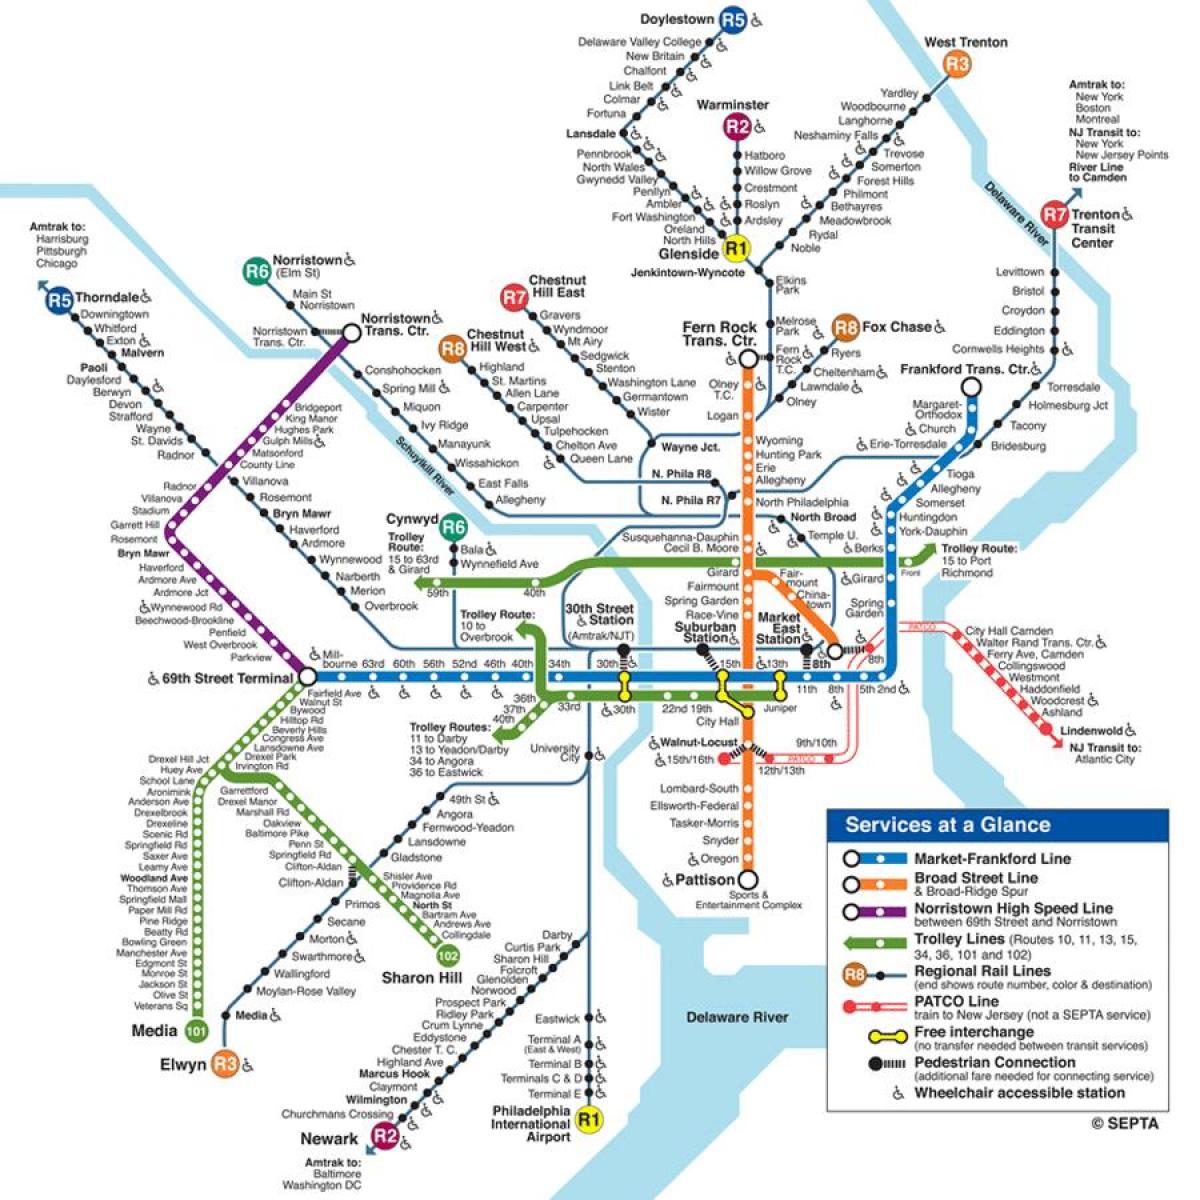 फिली मेट्रो का नक्शा